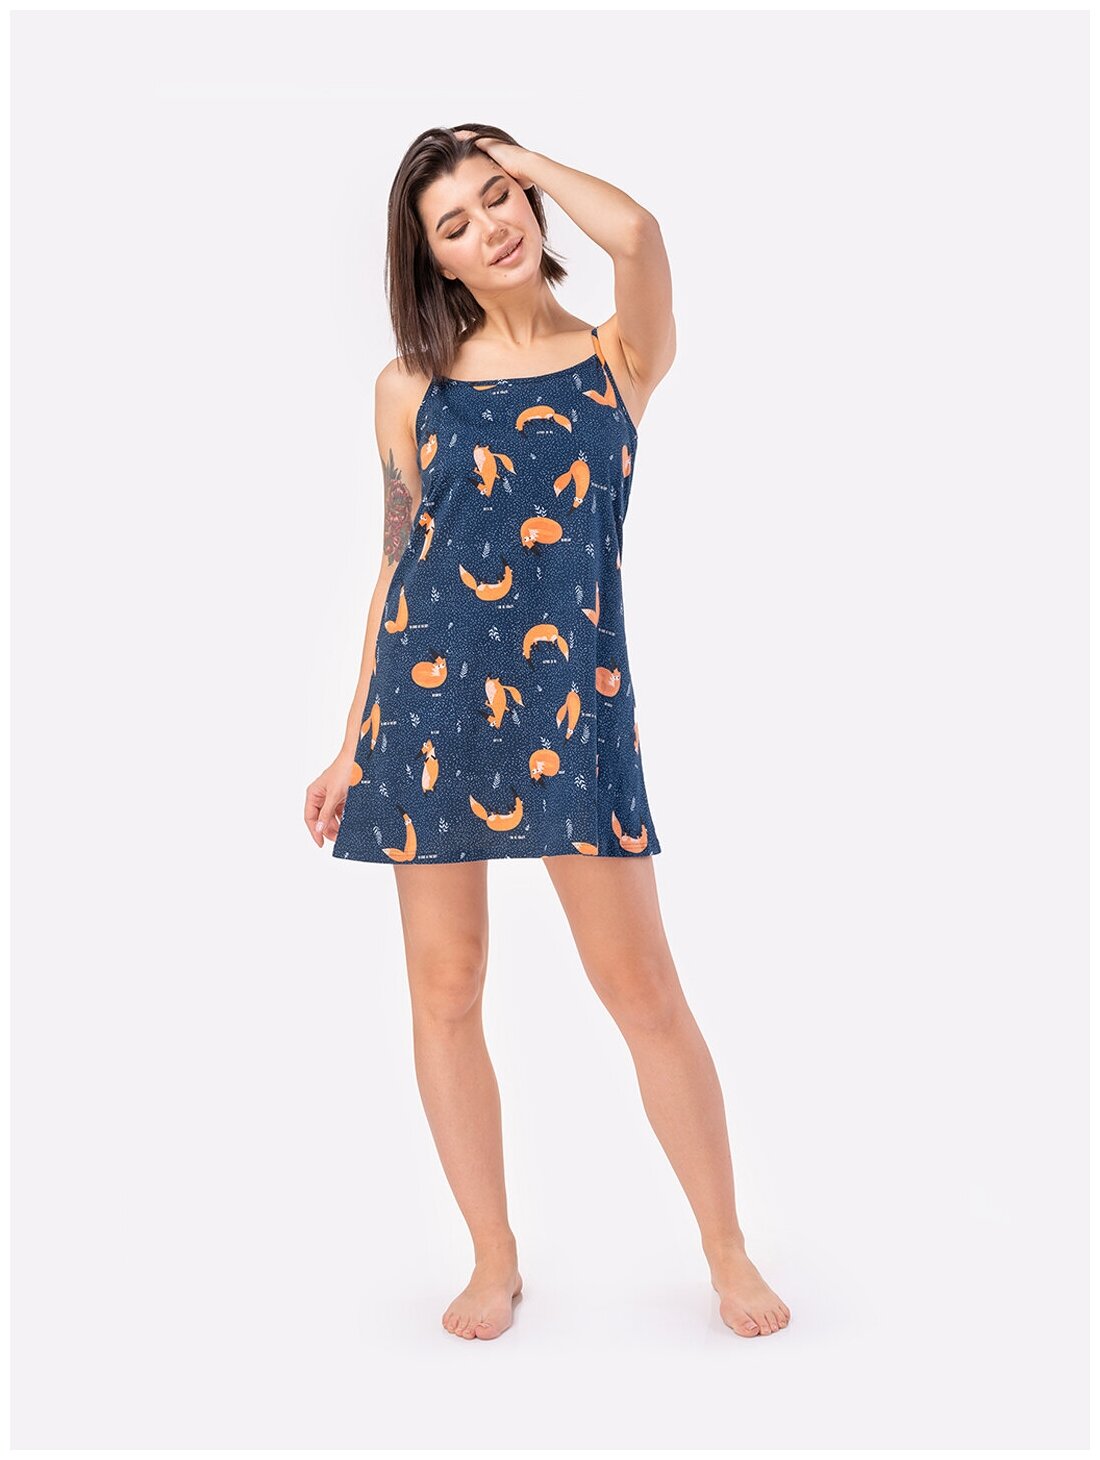 Сорочка женская HappyFox, HF3000MSP размер 50, цвет лисы,т.синий - фотография № 4